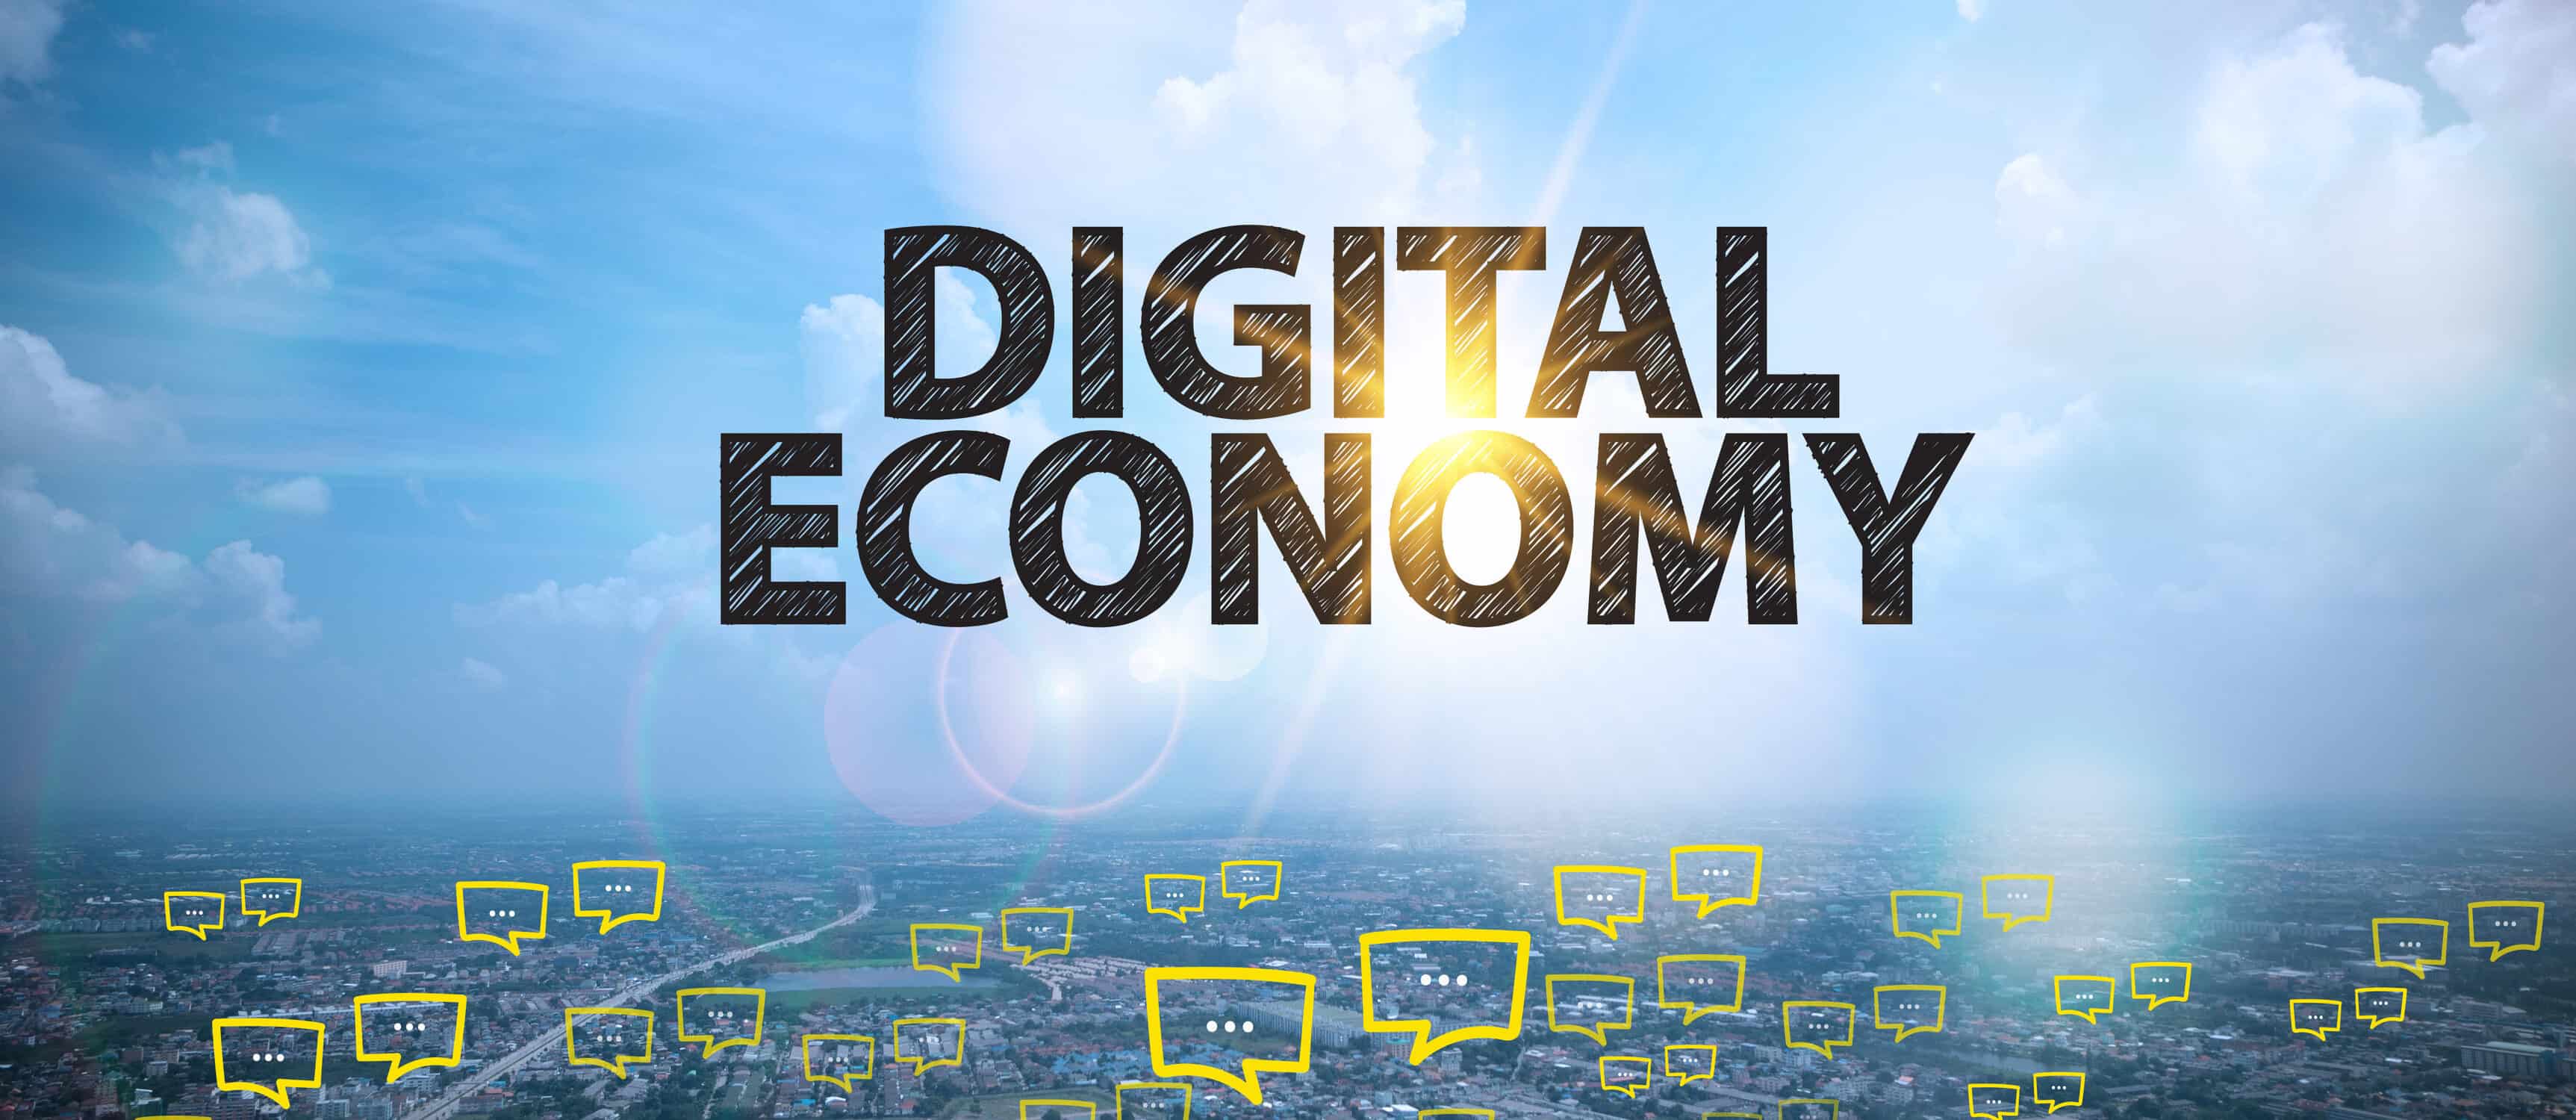 Digital Economy e1567514874458